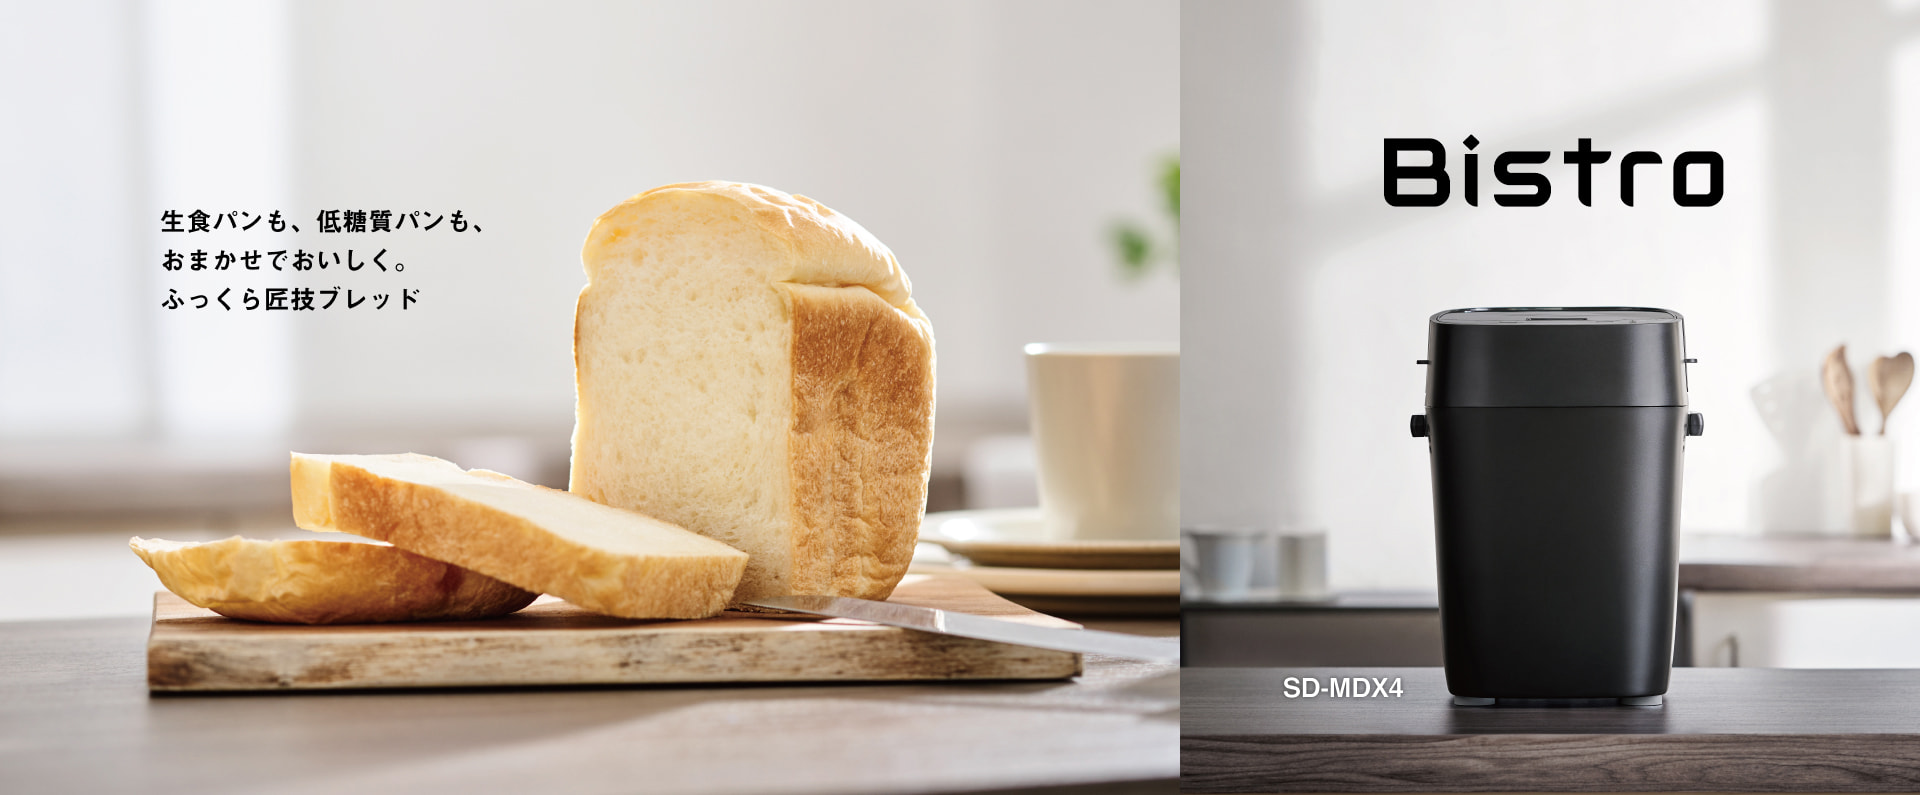 生食パンも、低糖質パンも、おまかせでおいしく。ふっくら匠技ブレッド Bistro SD-MDX4